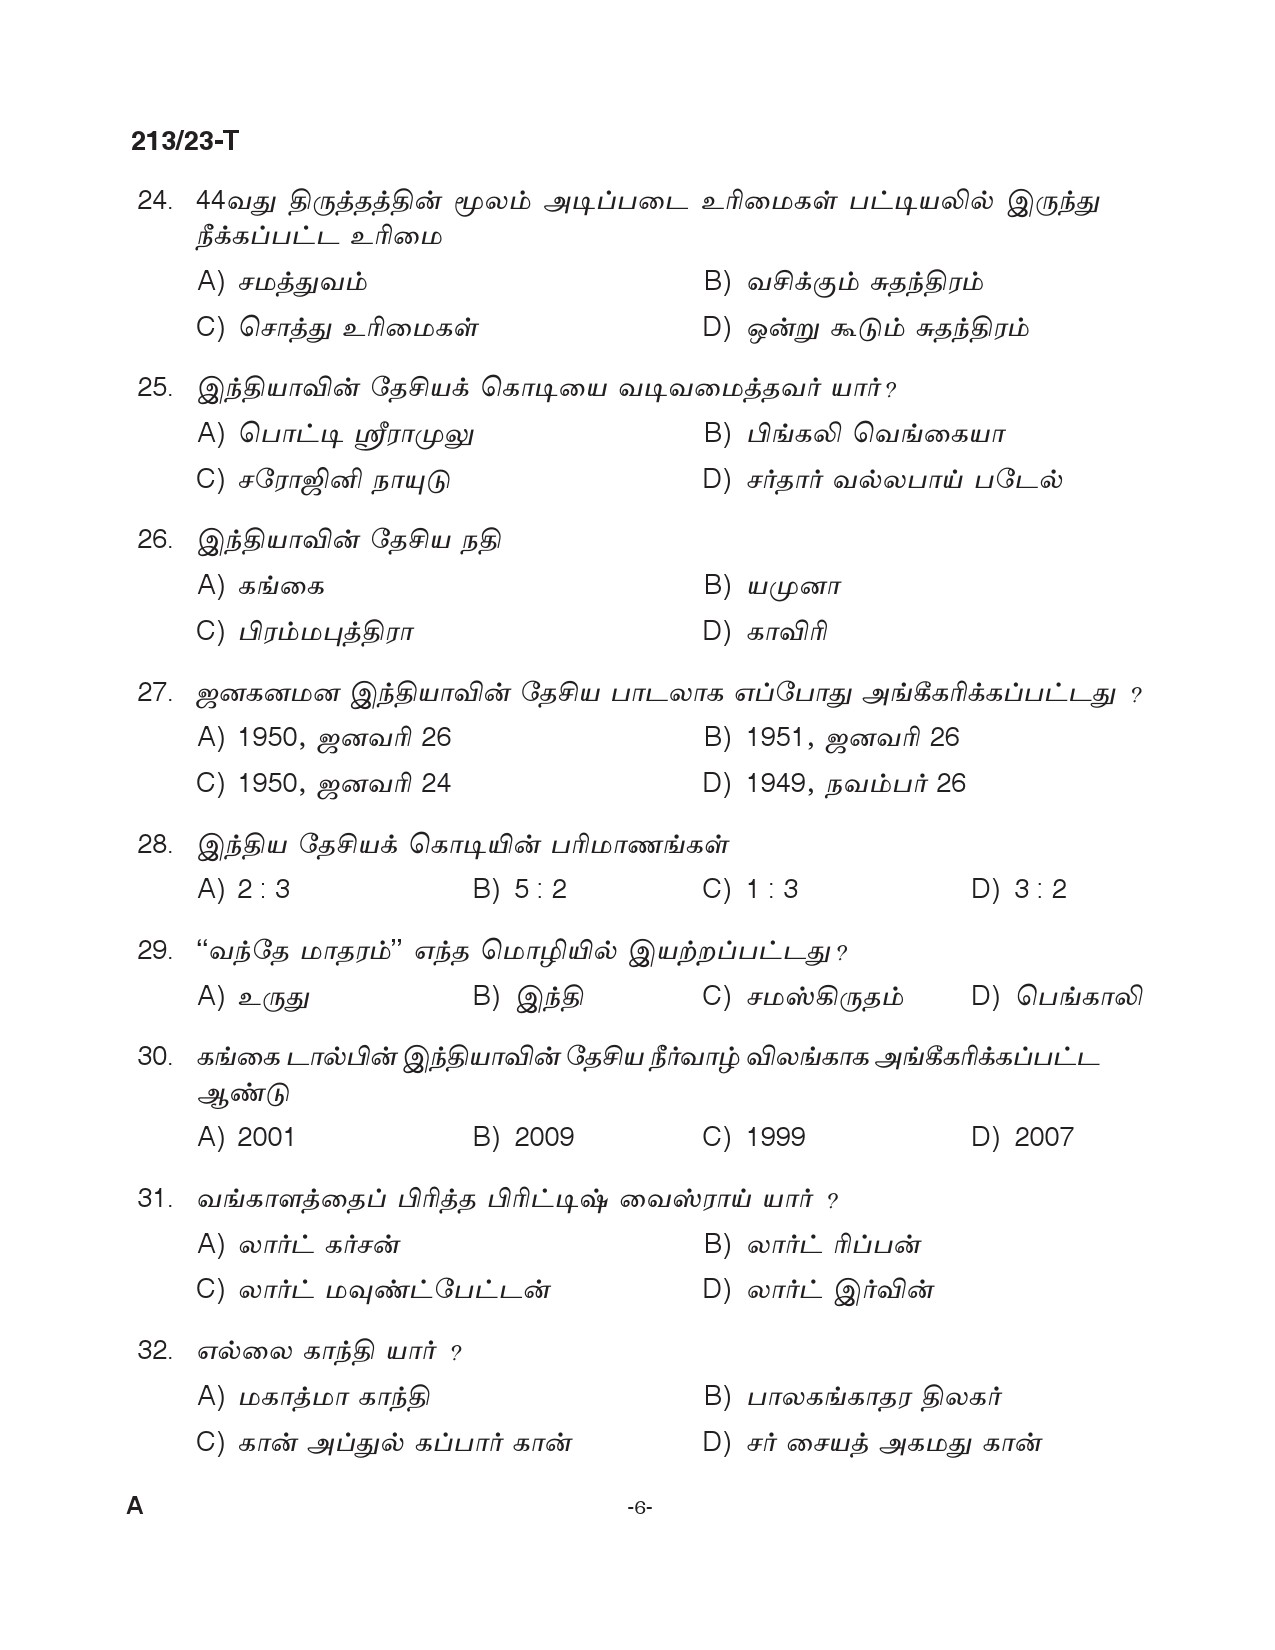 KPSC LGS Tamil Exam 2023 Code 2132023 T 5